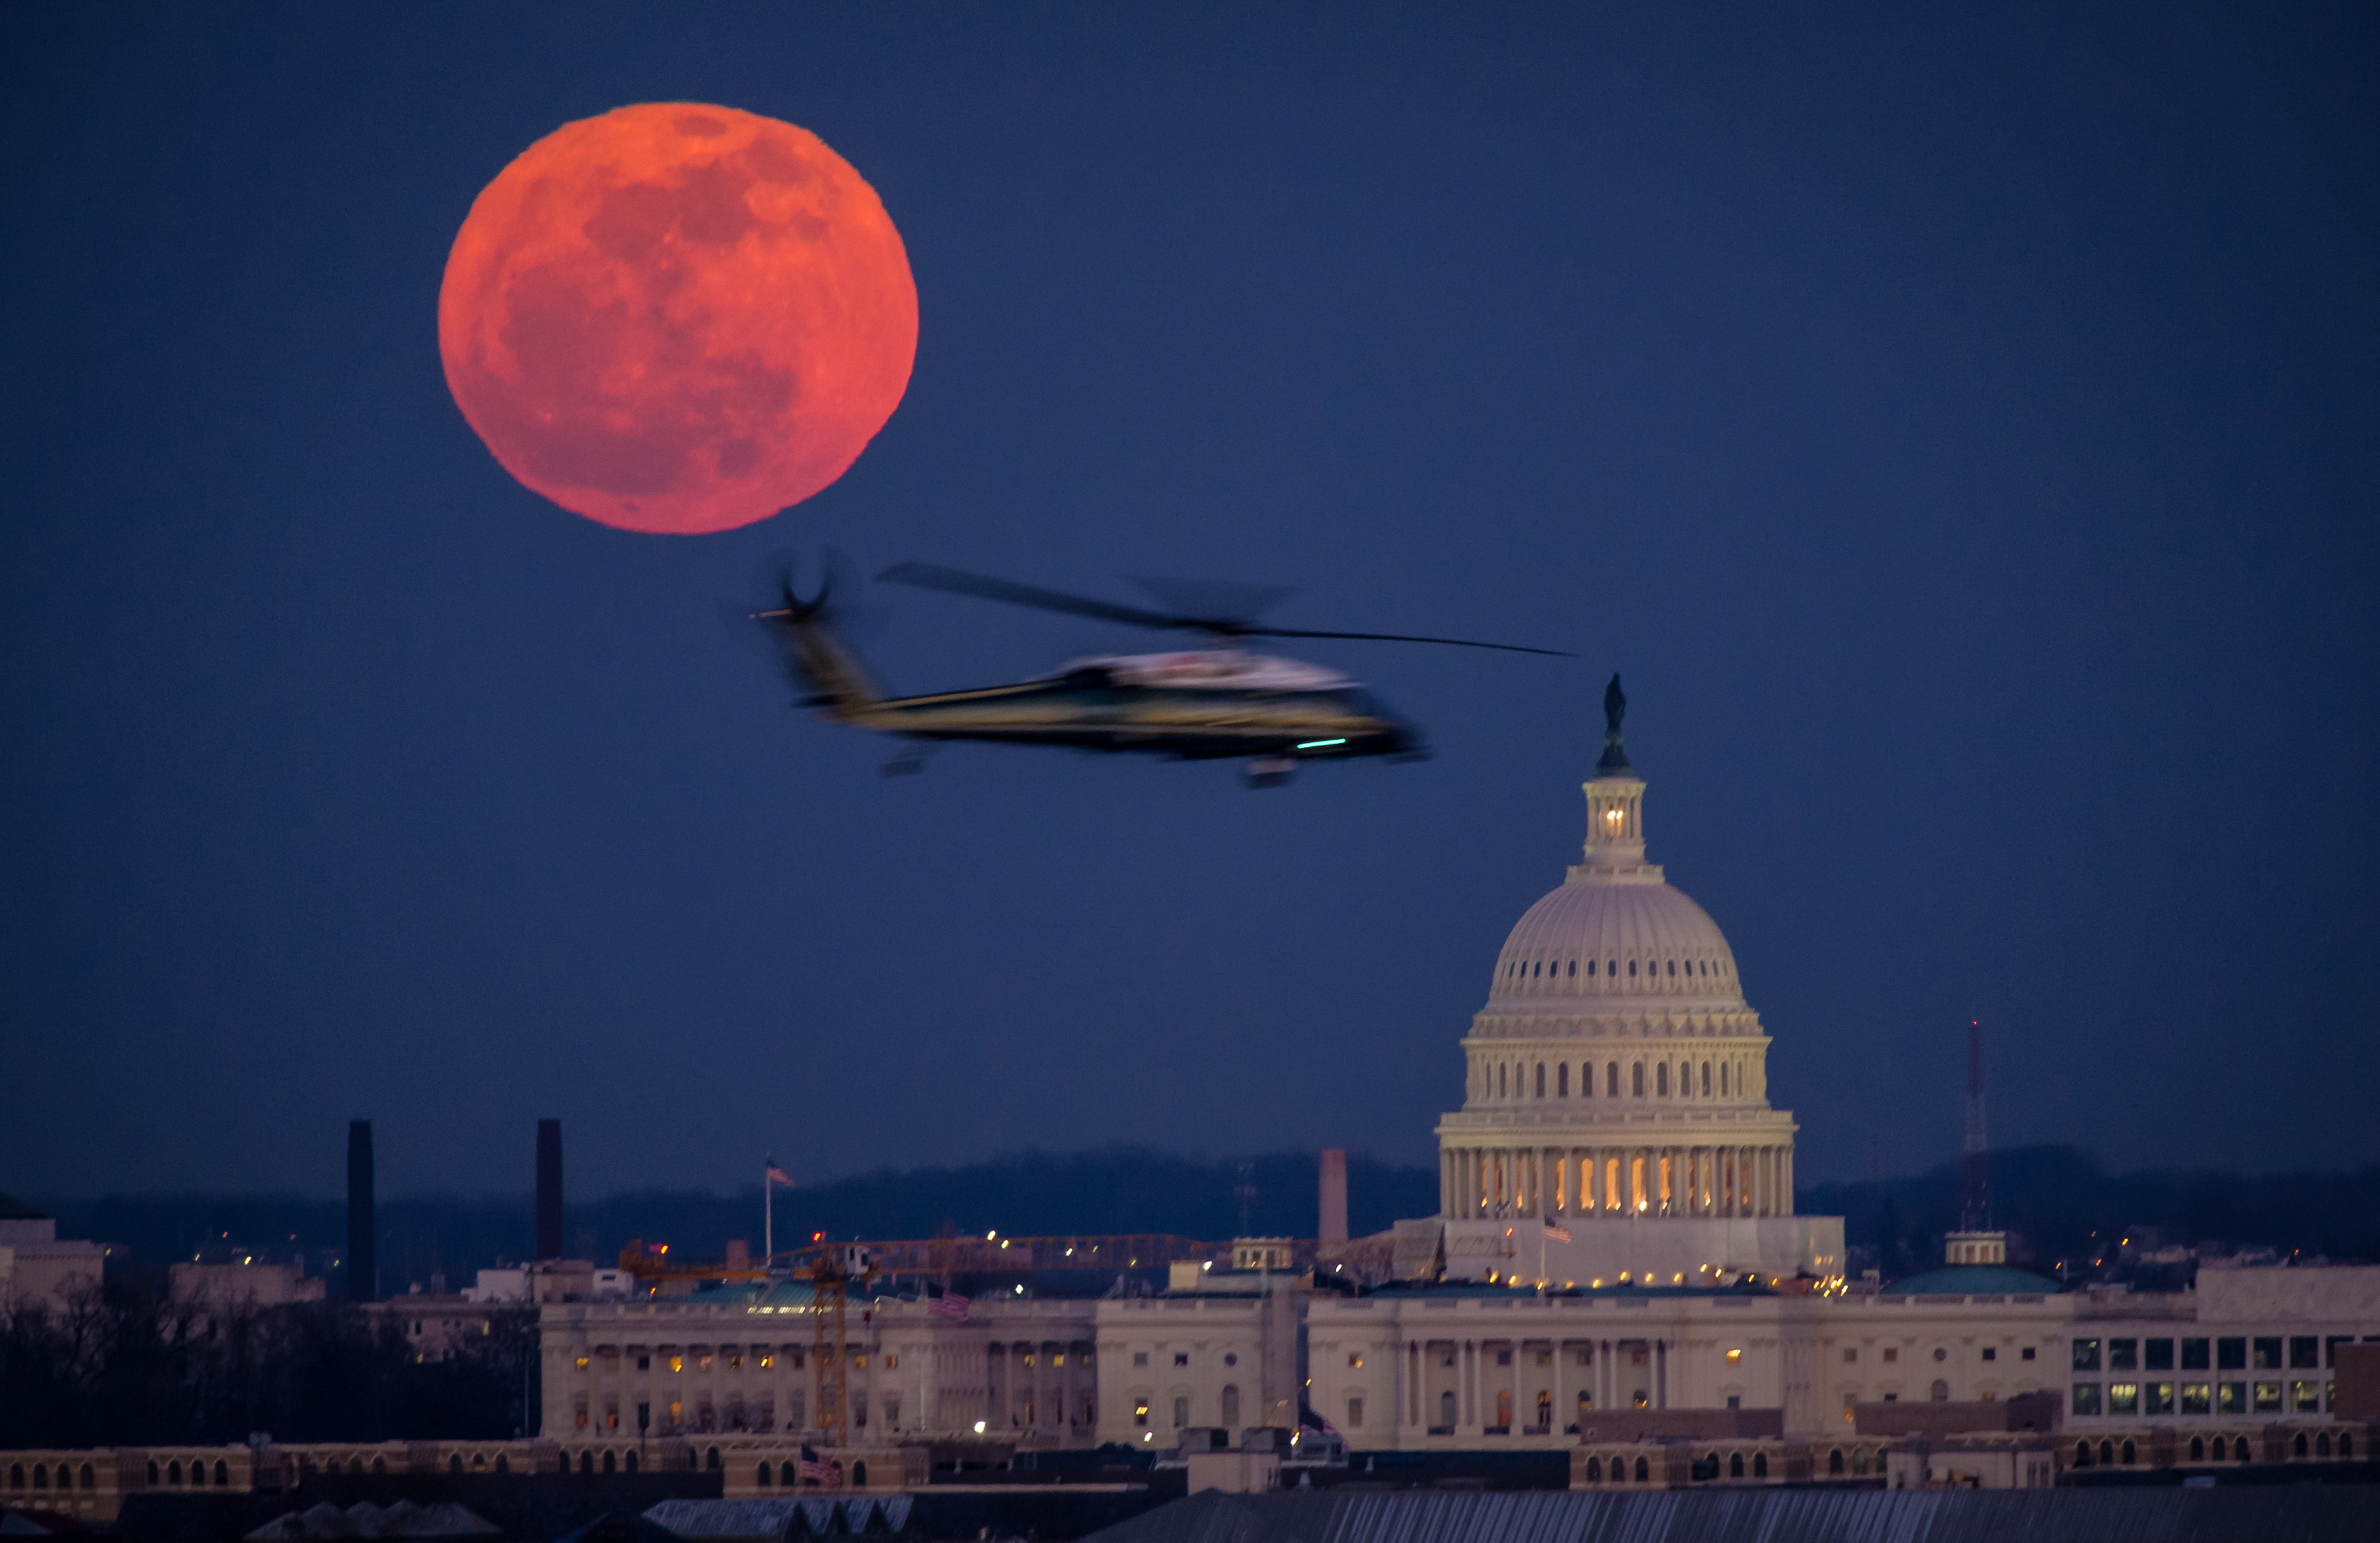 شوهدت طائرة هليكوبتر تابعة لقوات مشاة البحرية الأمريكية تحلق عبر هذا المشهد من اكتمال القمر ومبنى الكابيتول الأمريكي يوم الثلاثاء ، 7 فبراير ، 2012 من مقبرة أرلينغتون الوطنية